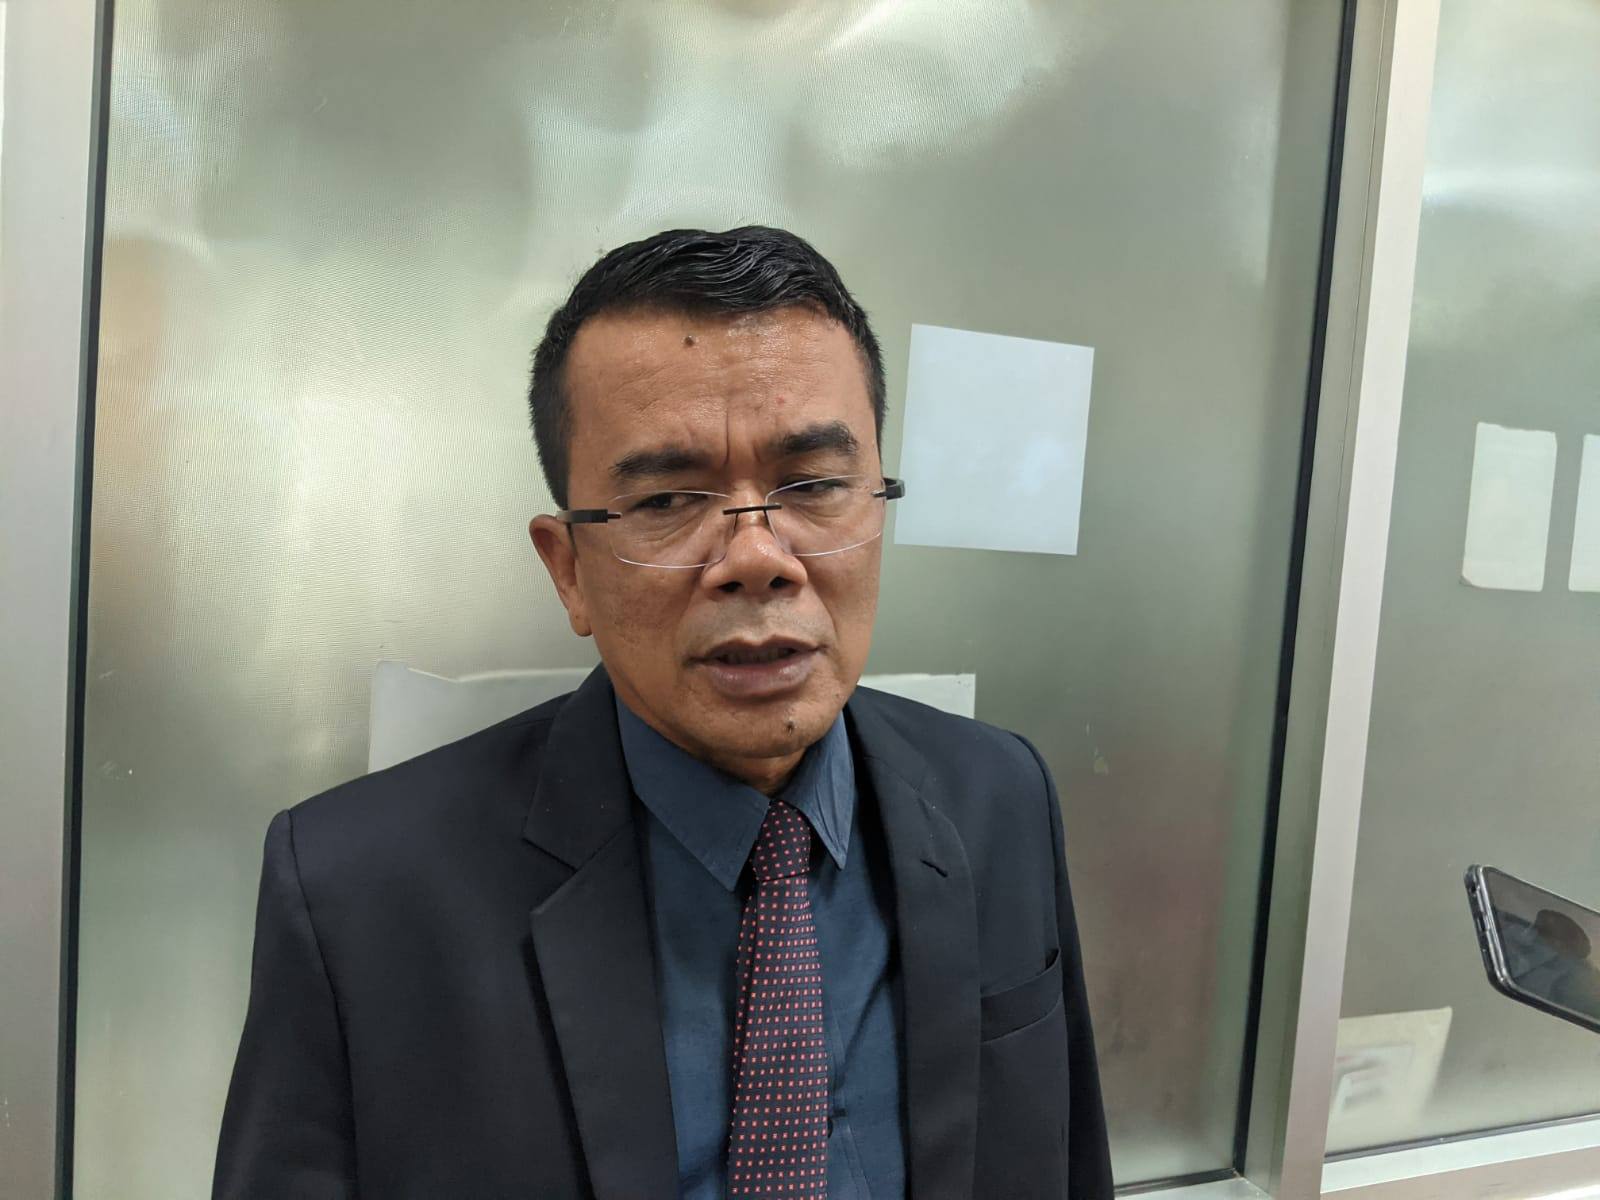 Biaya Pokok selama 2019 ke Bawah Sudah Tuntas, PT Samaco Diberi Waktu Hingga Juni untuk Lunasi Denda